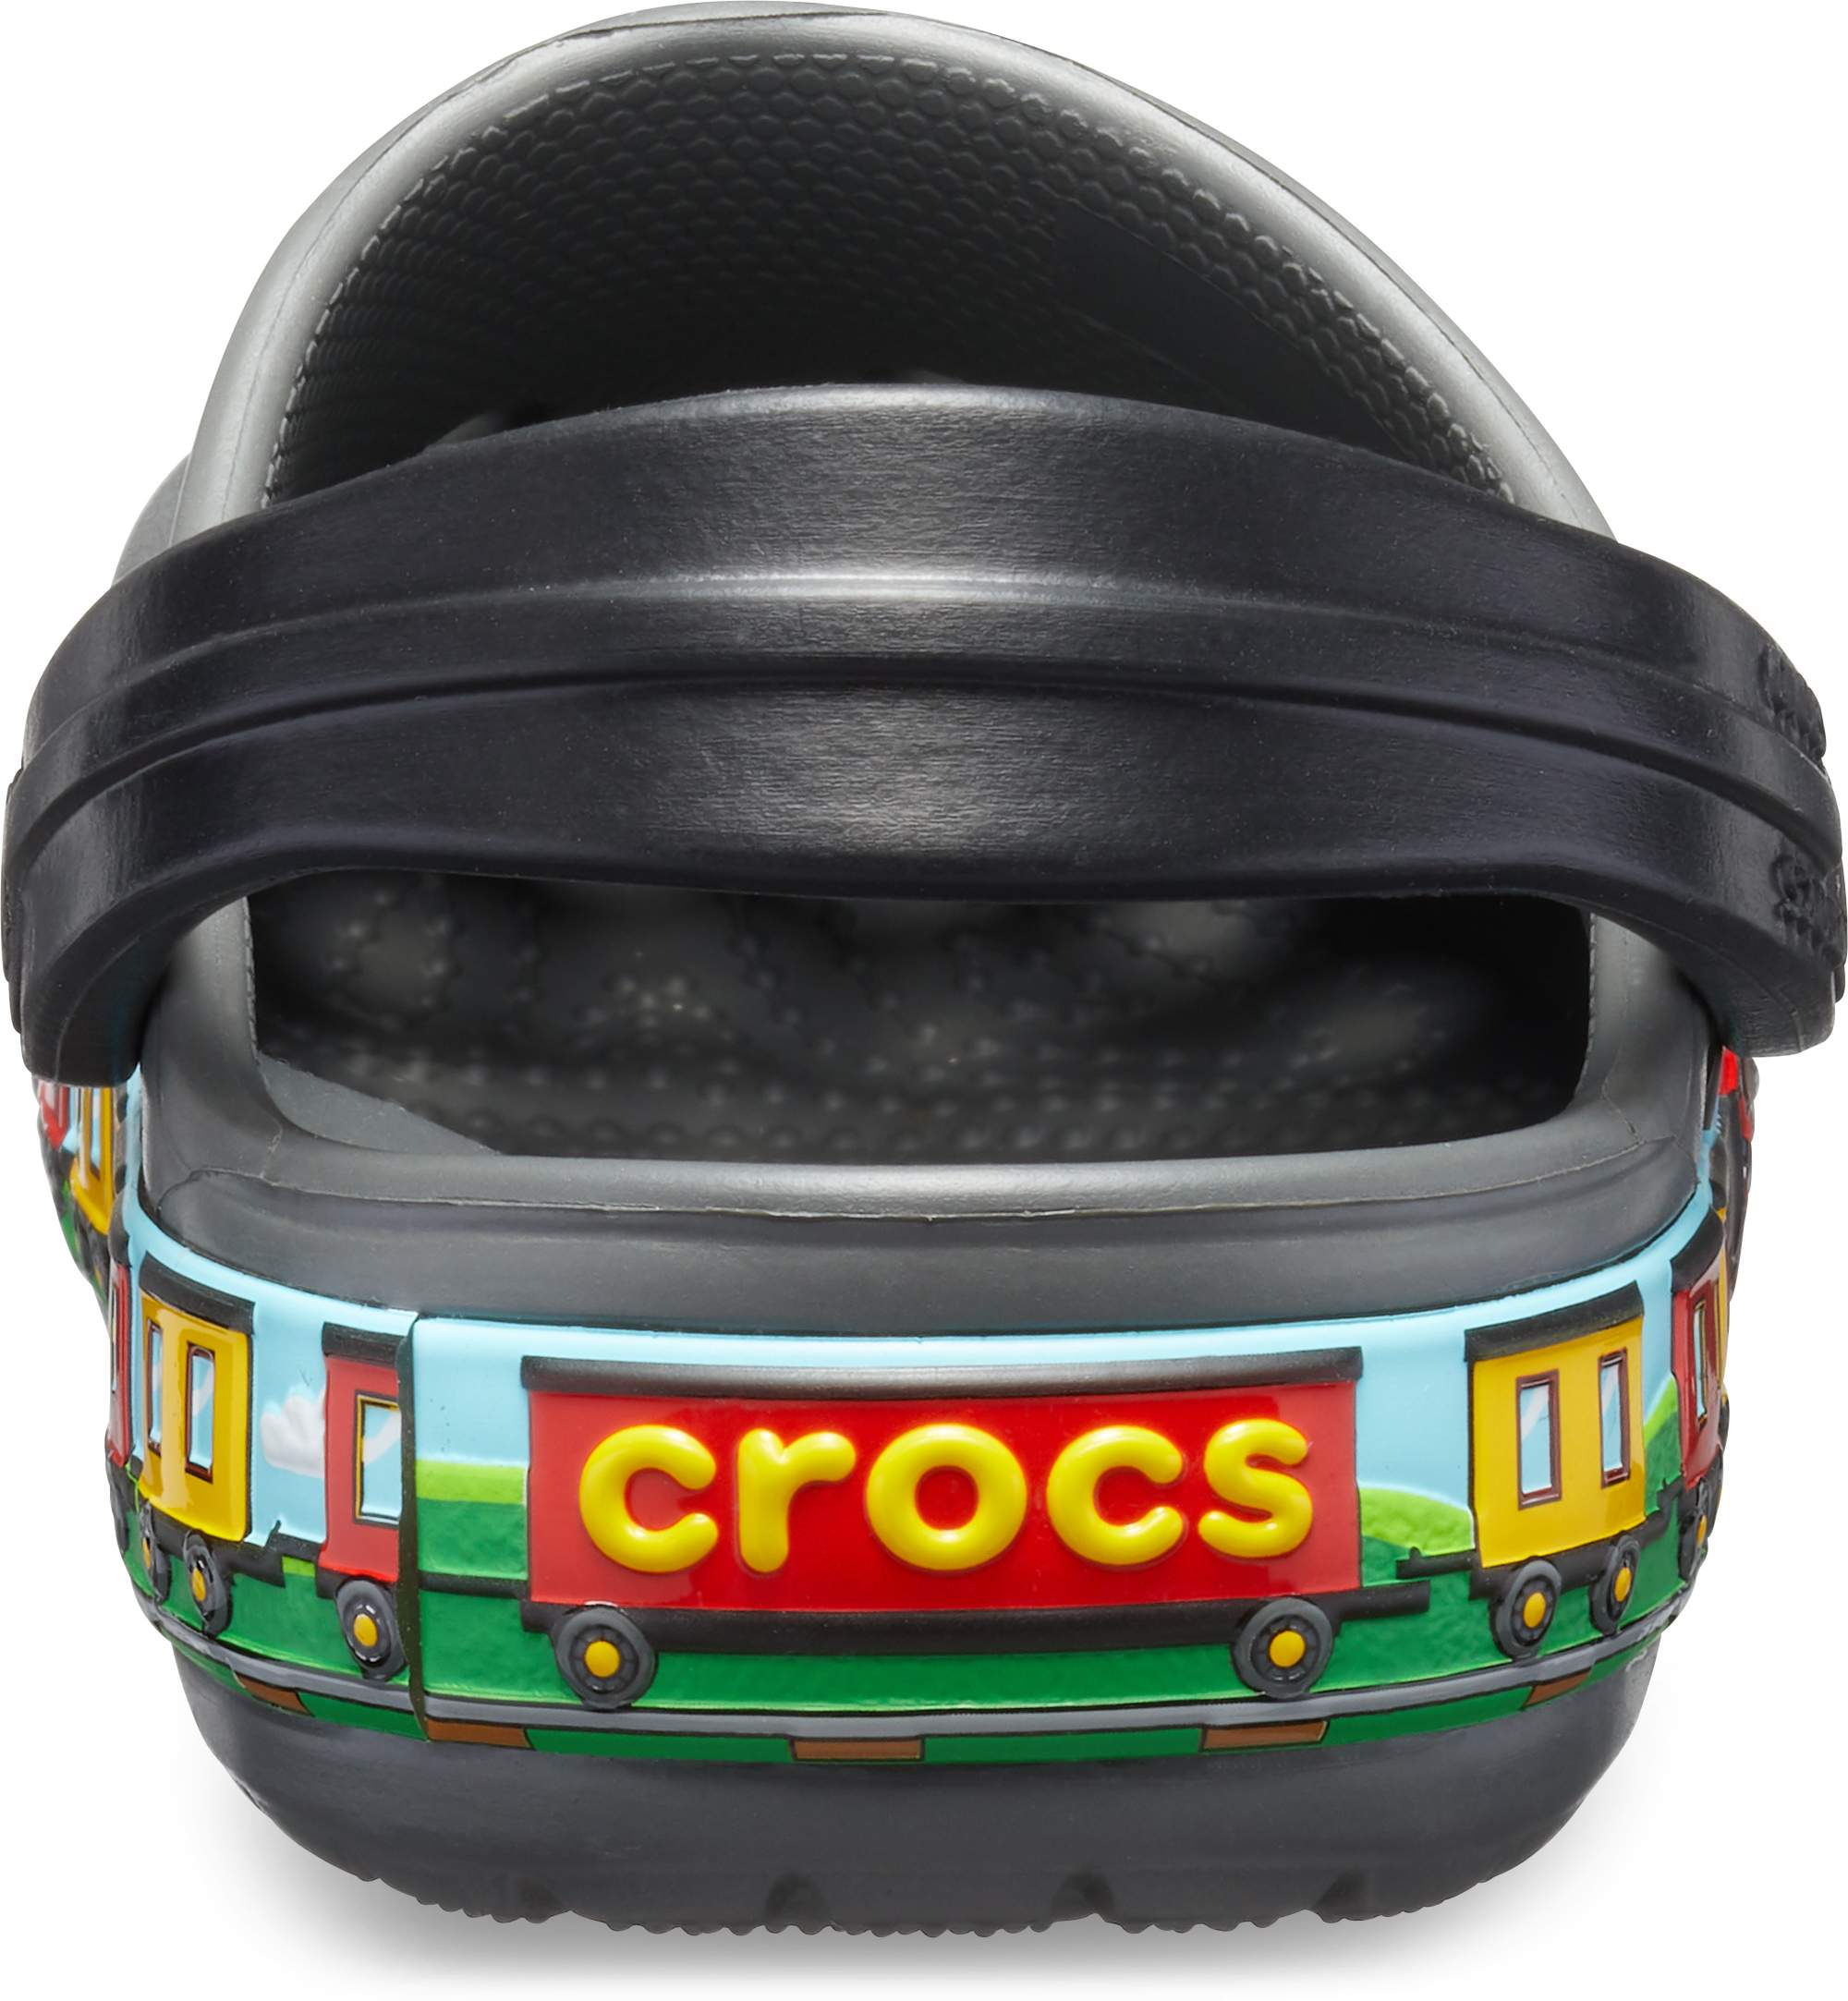 firefighter crocs